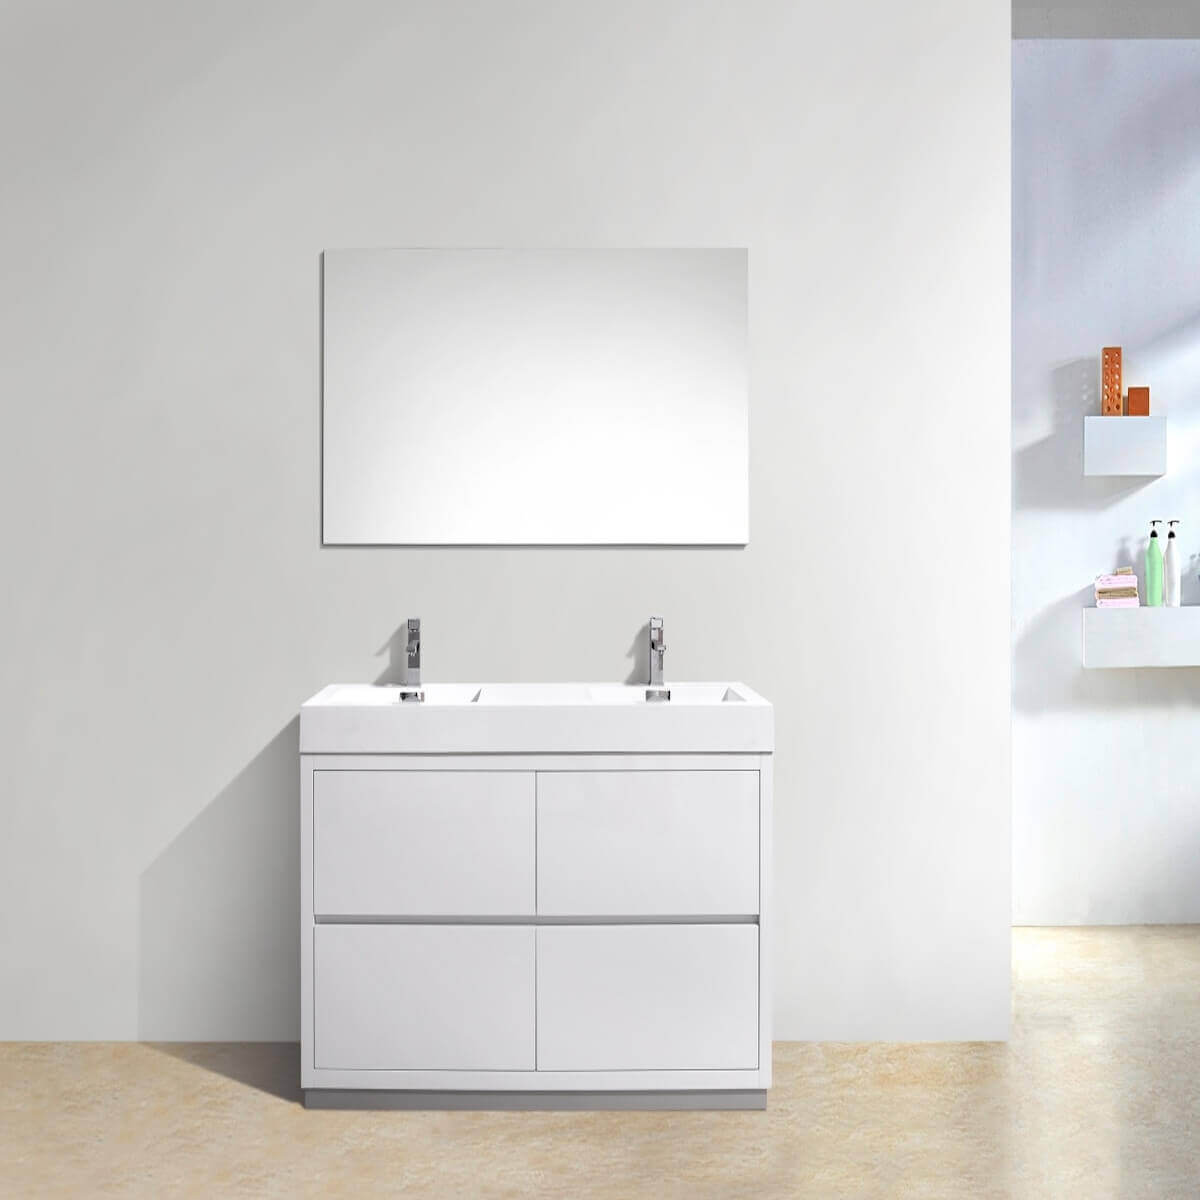 KubeBath Bliss 60" Gloss White Freestanding Double Vanity FMB60D-GW in Bathroom #finish_gloss white